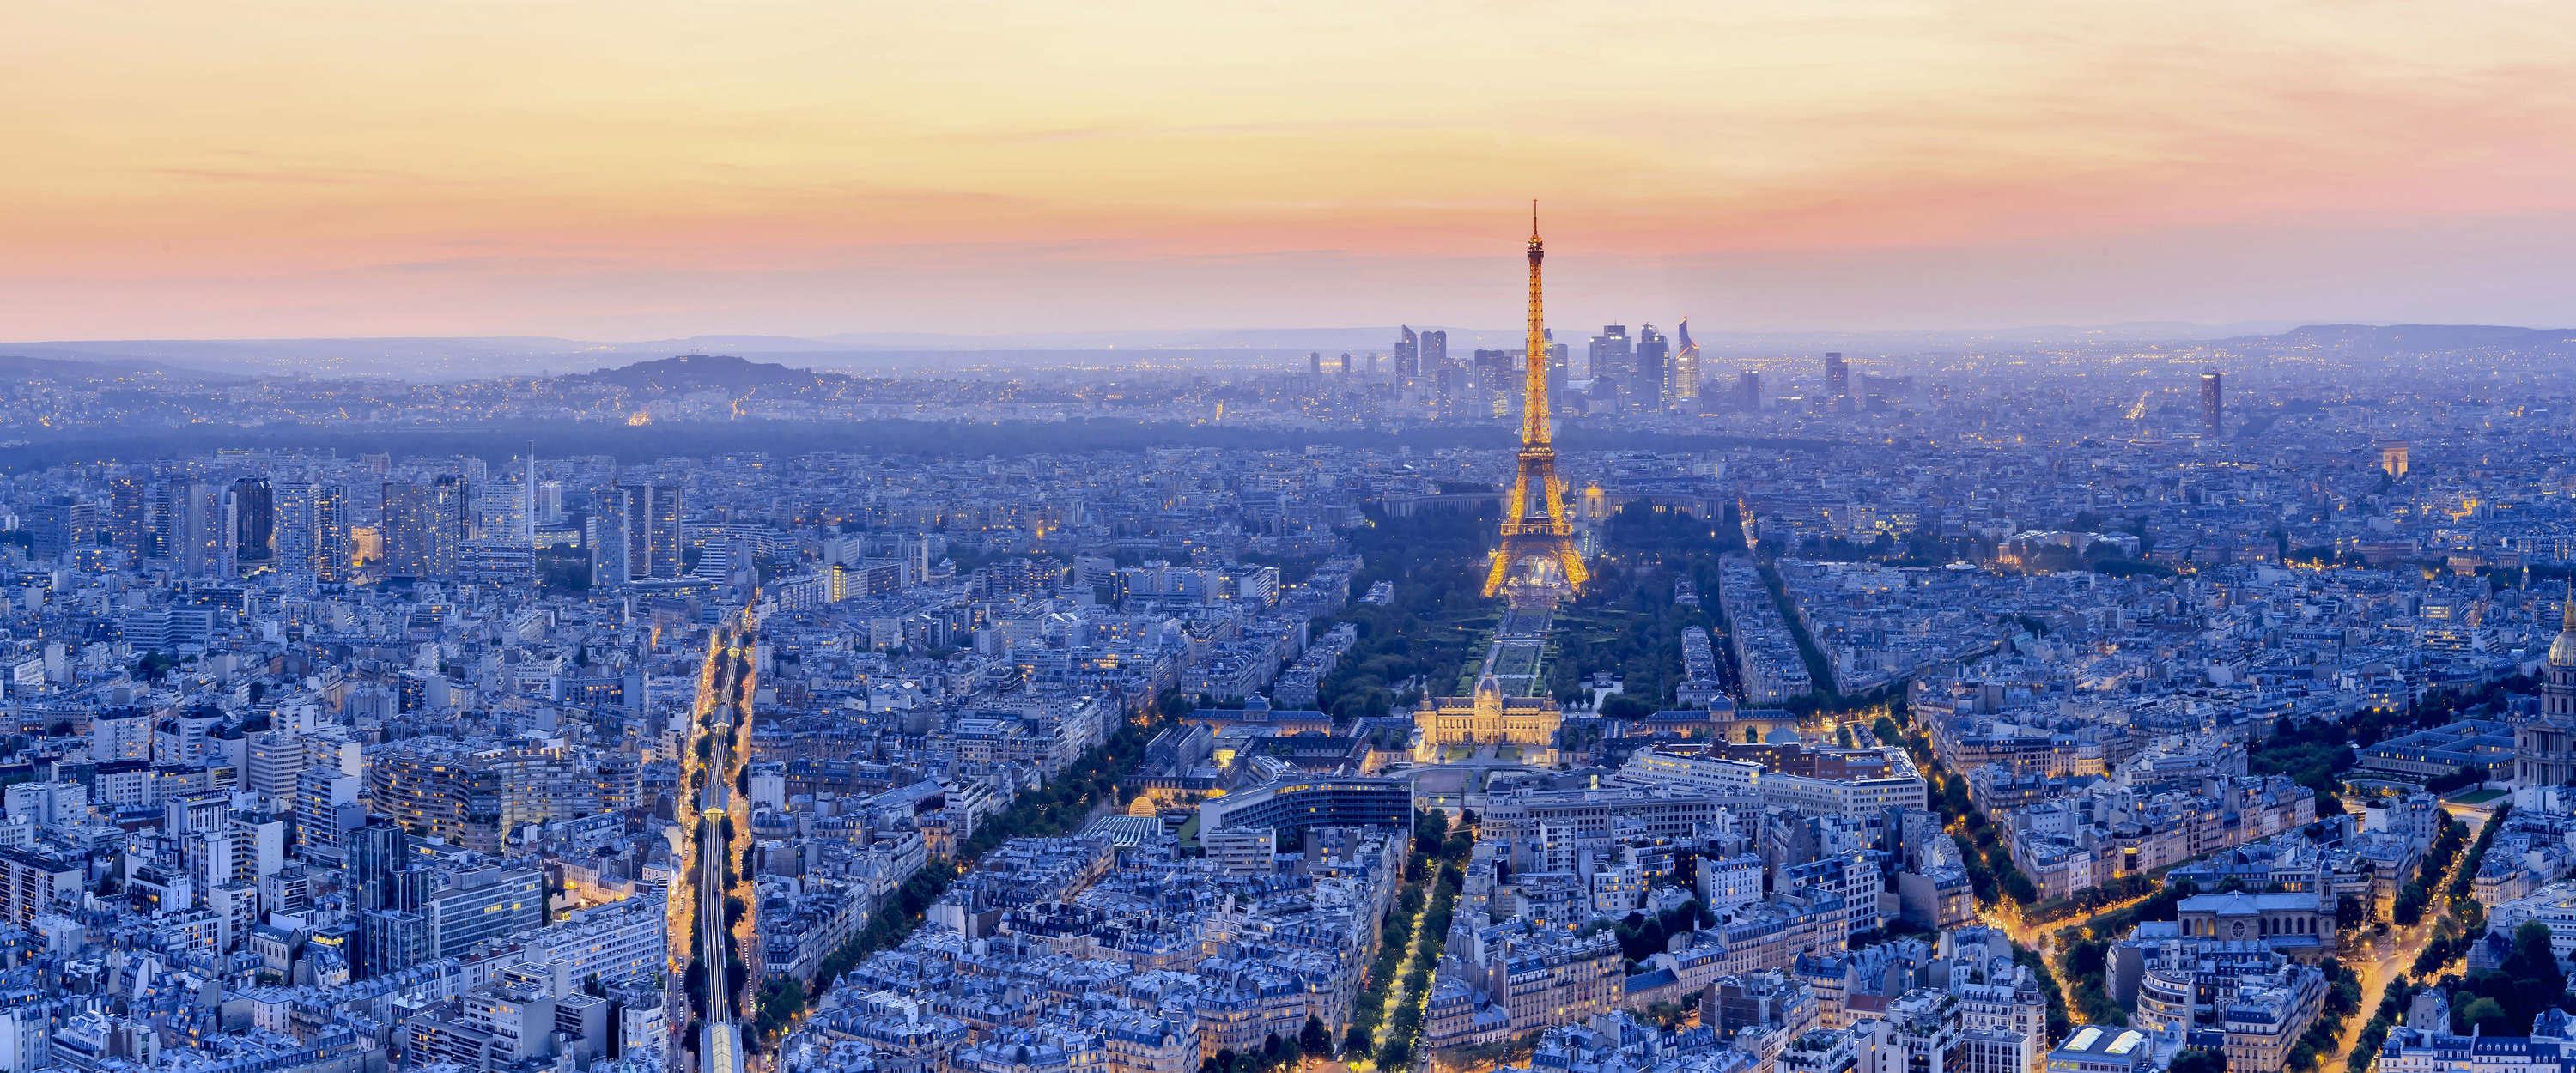             Papier peint panoramique Paris, métropole lumineuse à l'aube
        